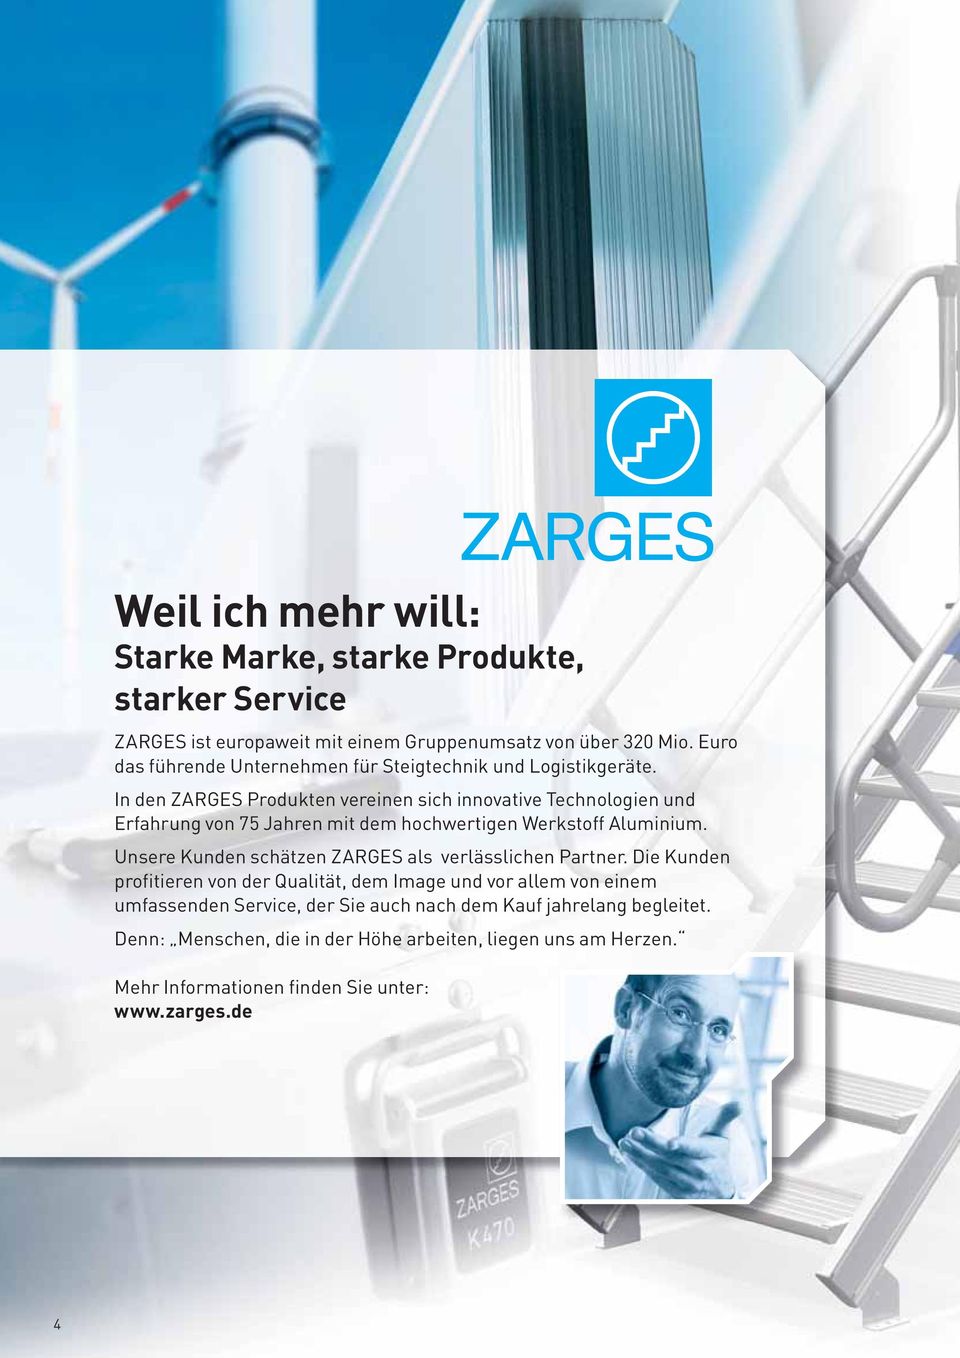 In den ZARGES Produkten vereinen sich innovative Technologien und Erfahrung von 75 Jahren mit dem hochwertigen Werkstoff Aluminium.